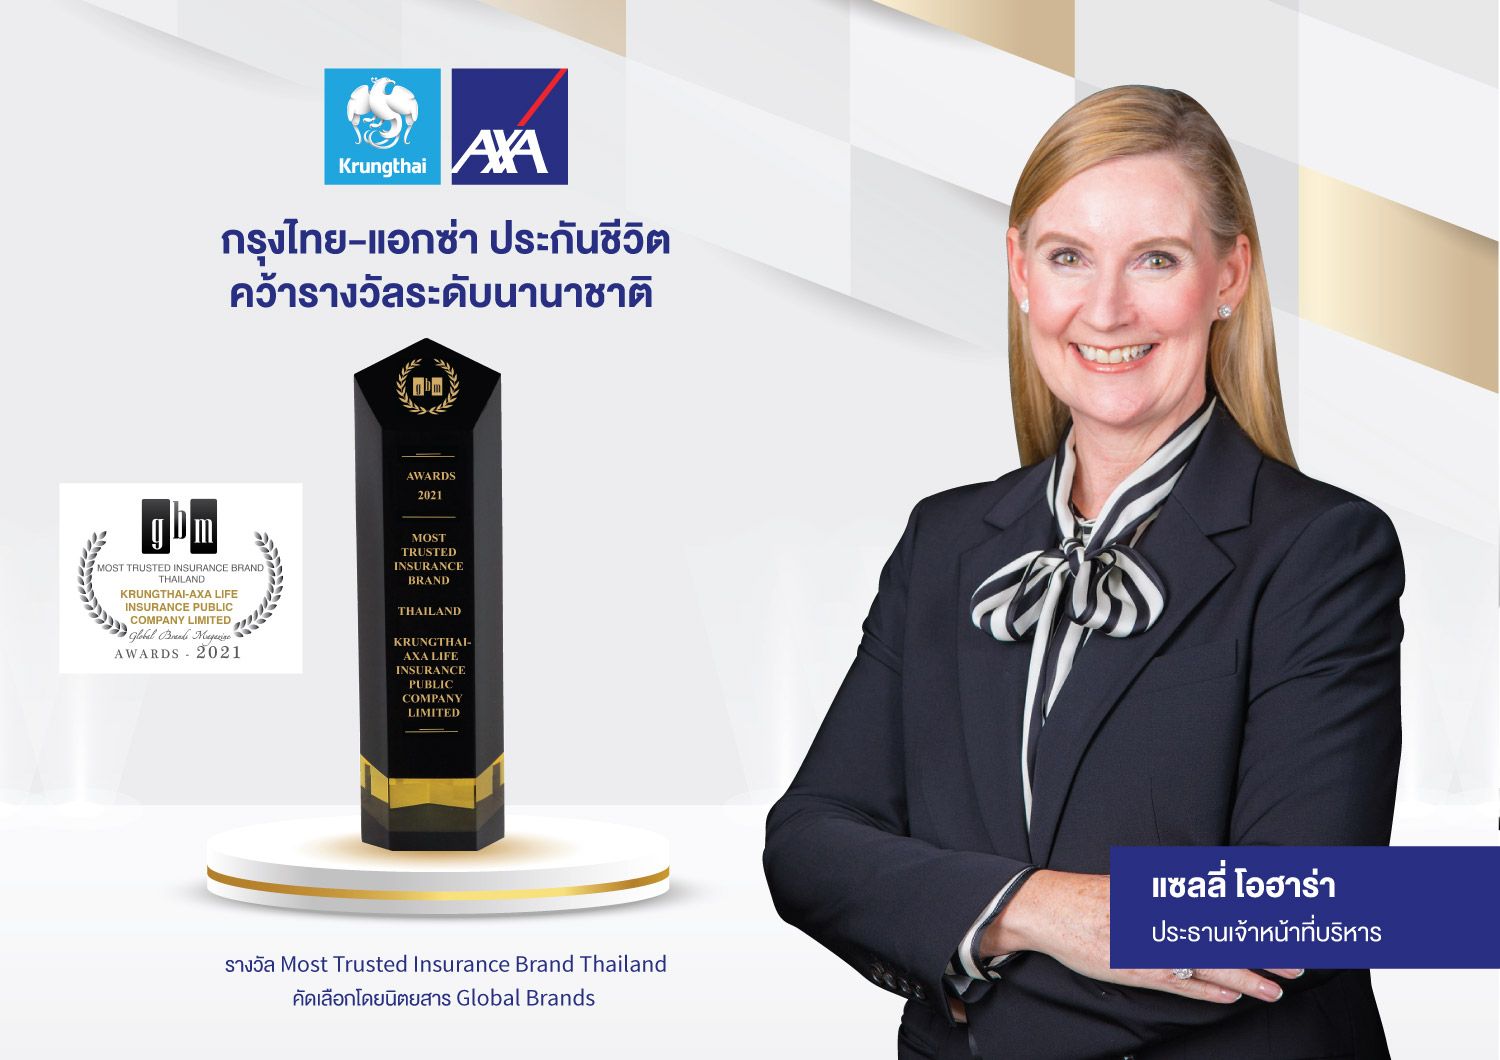 กรุงไทย–แอกซ่า ประกันชีวิต คว้ารางวัลระดับนานาชาติ  “Most Trusted Insurance Brand Thailand” จาก Global Brands